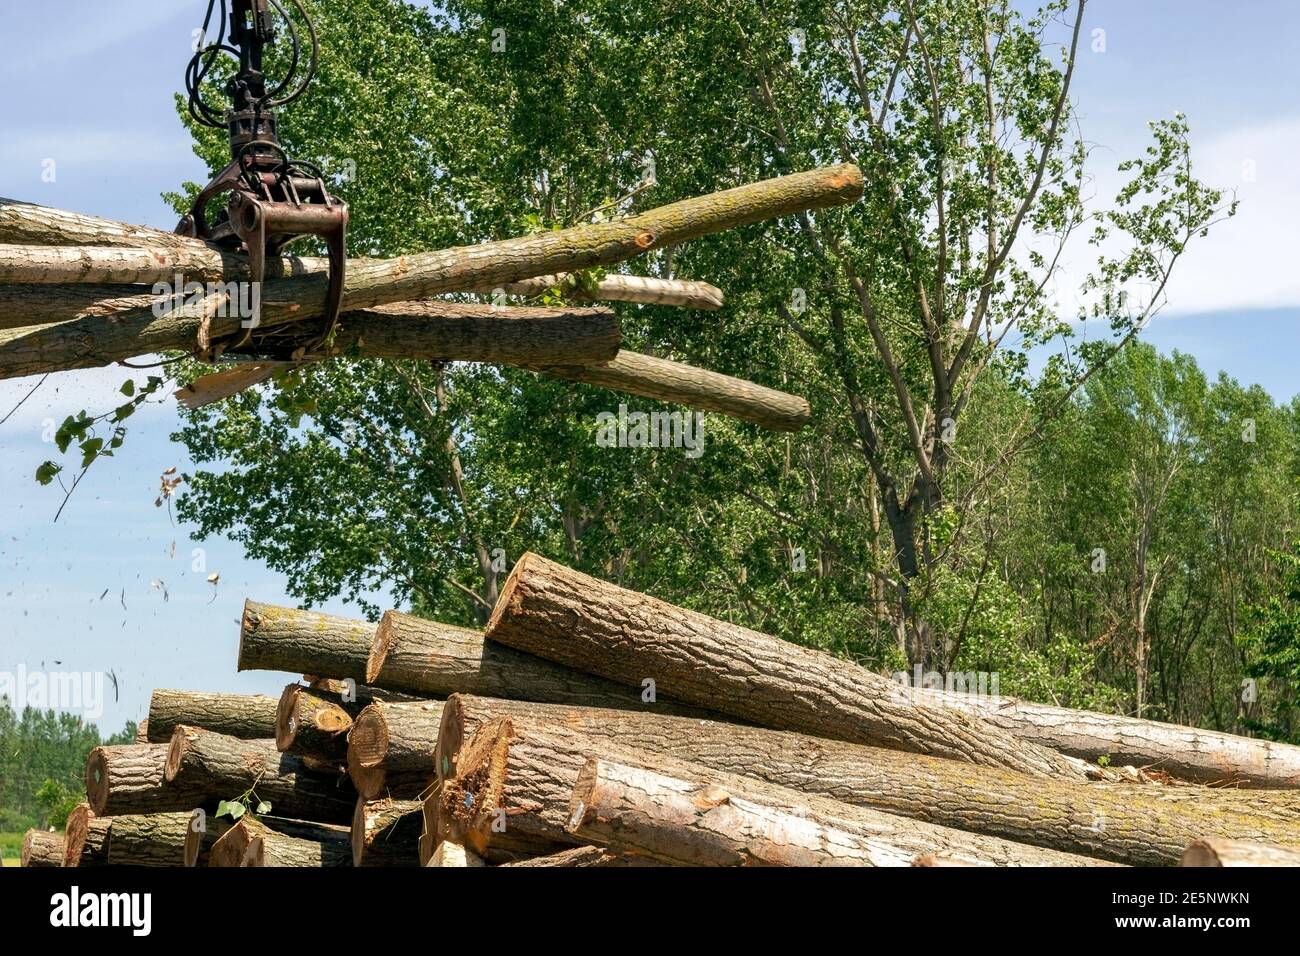 Bündel von Baumstämme in EINEM Krangreifer. Baumstämme mit Holzkran auf einen Stapel laden. Holzindustrie und Auswirkungen auf die Umwelt. Stockfoto